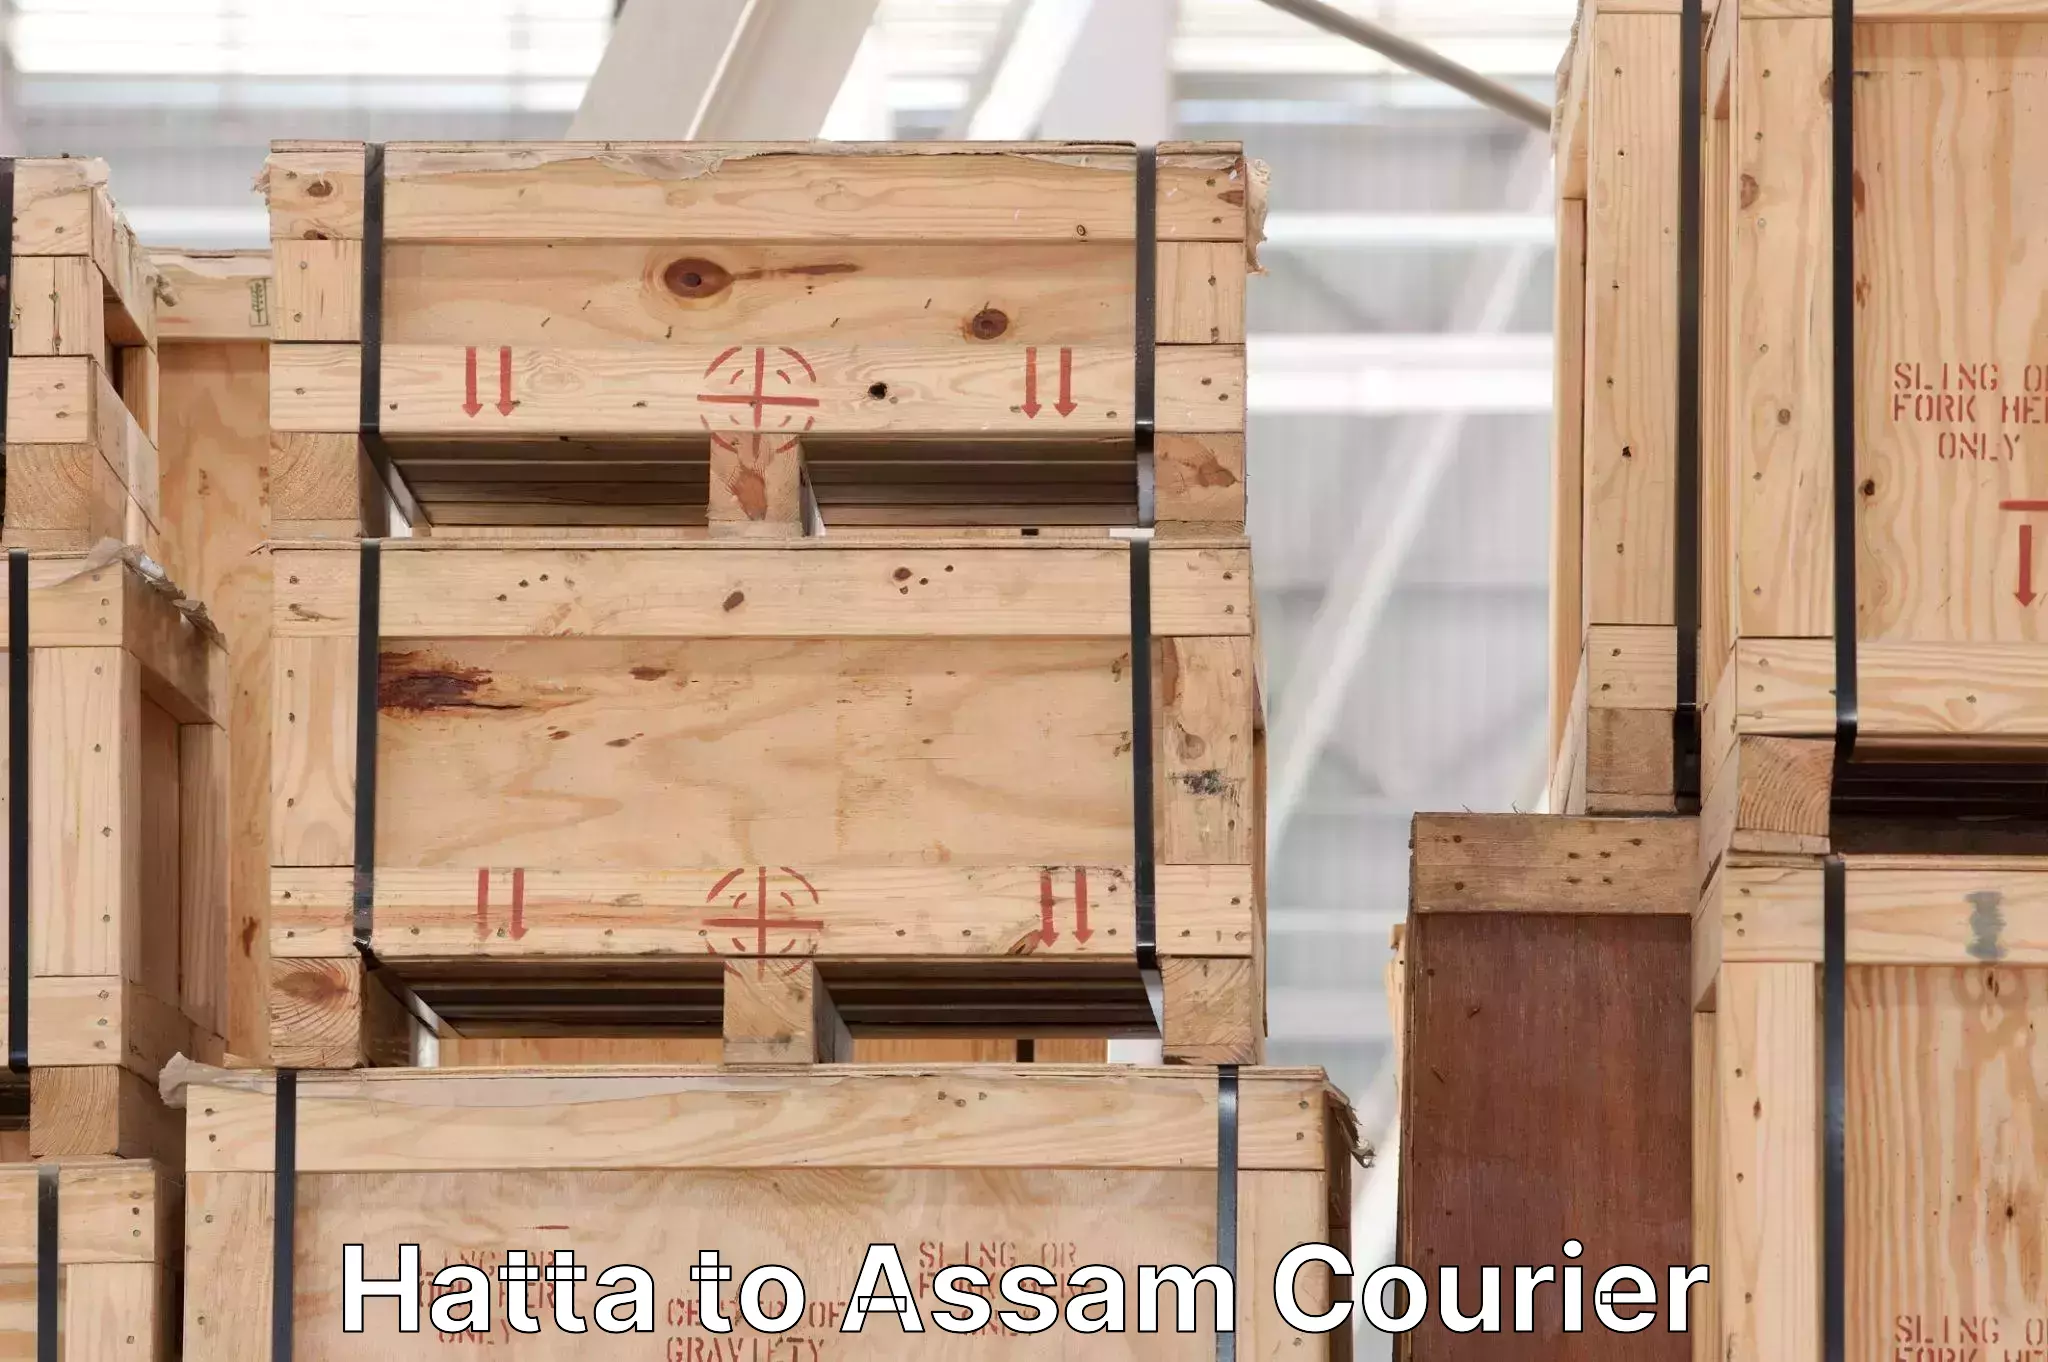 High-speed parcel service Hatta to Assam